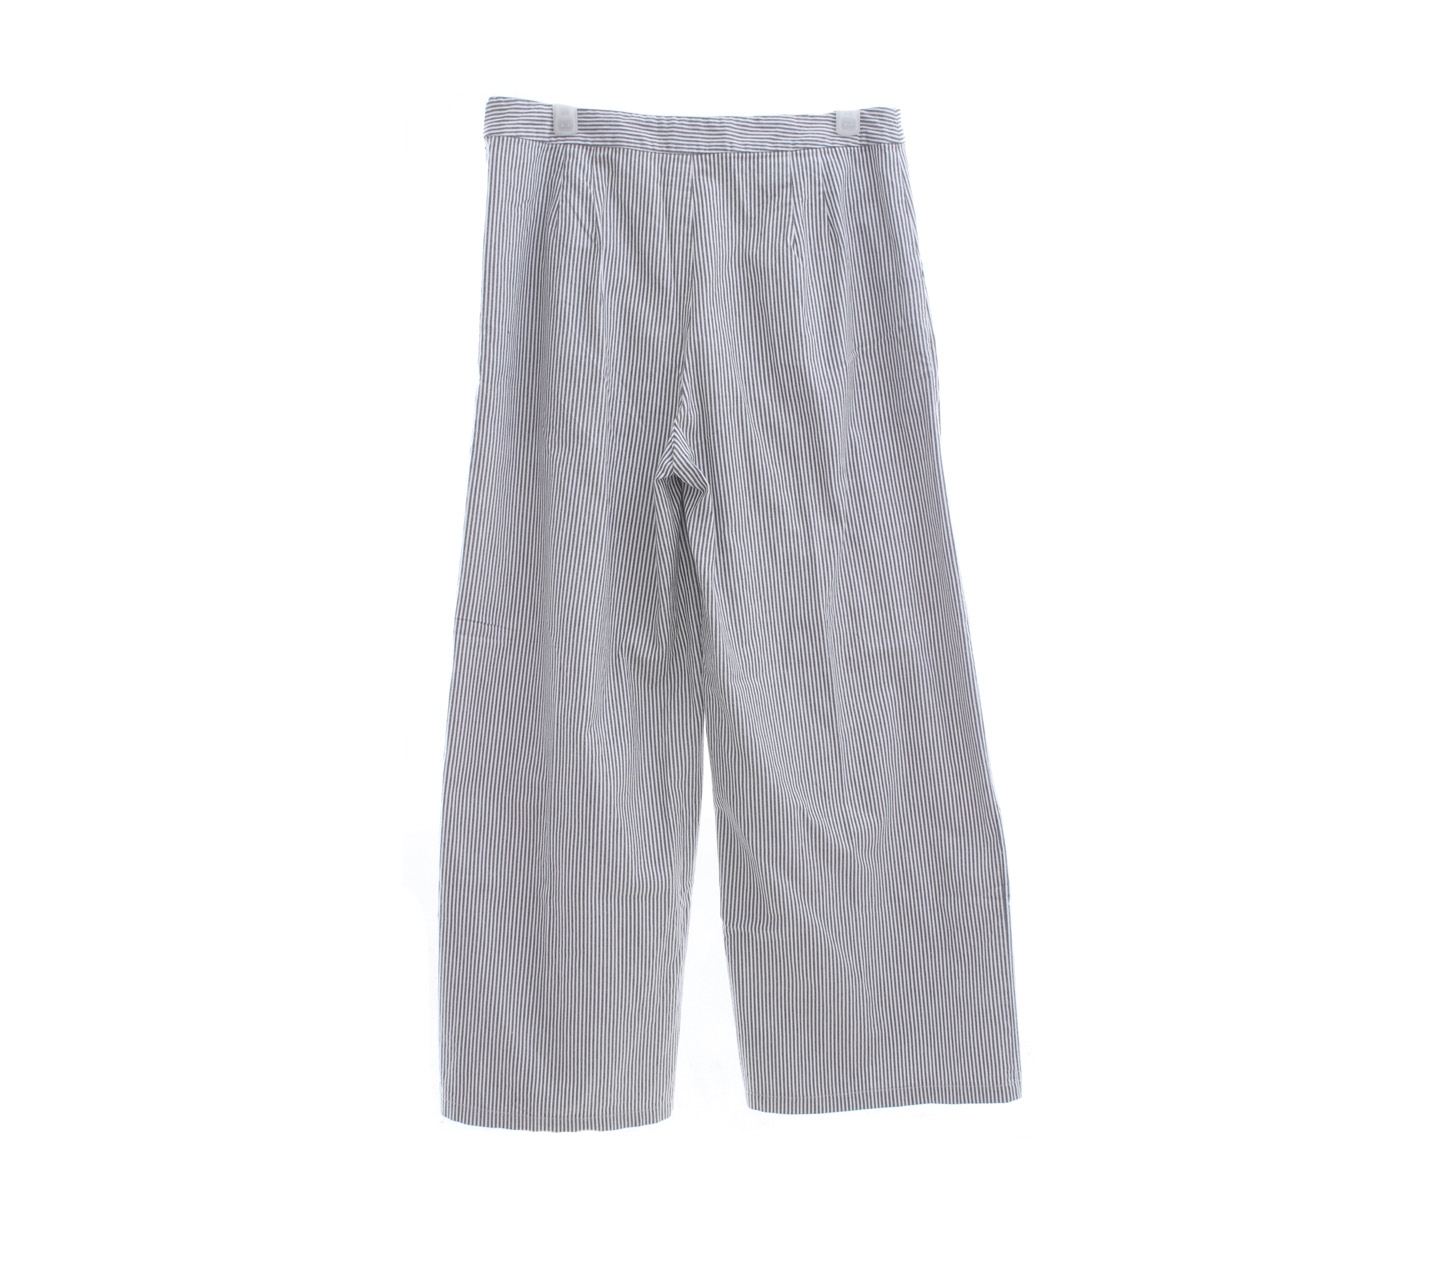 Cotton ink Grey & White Striped Long Pants